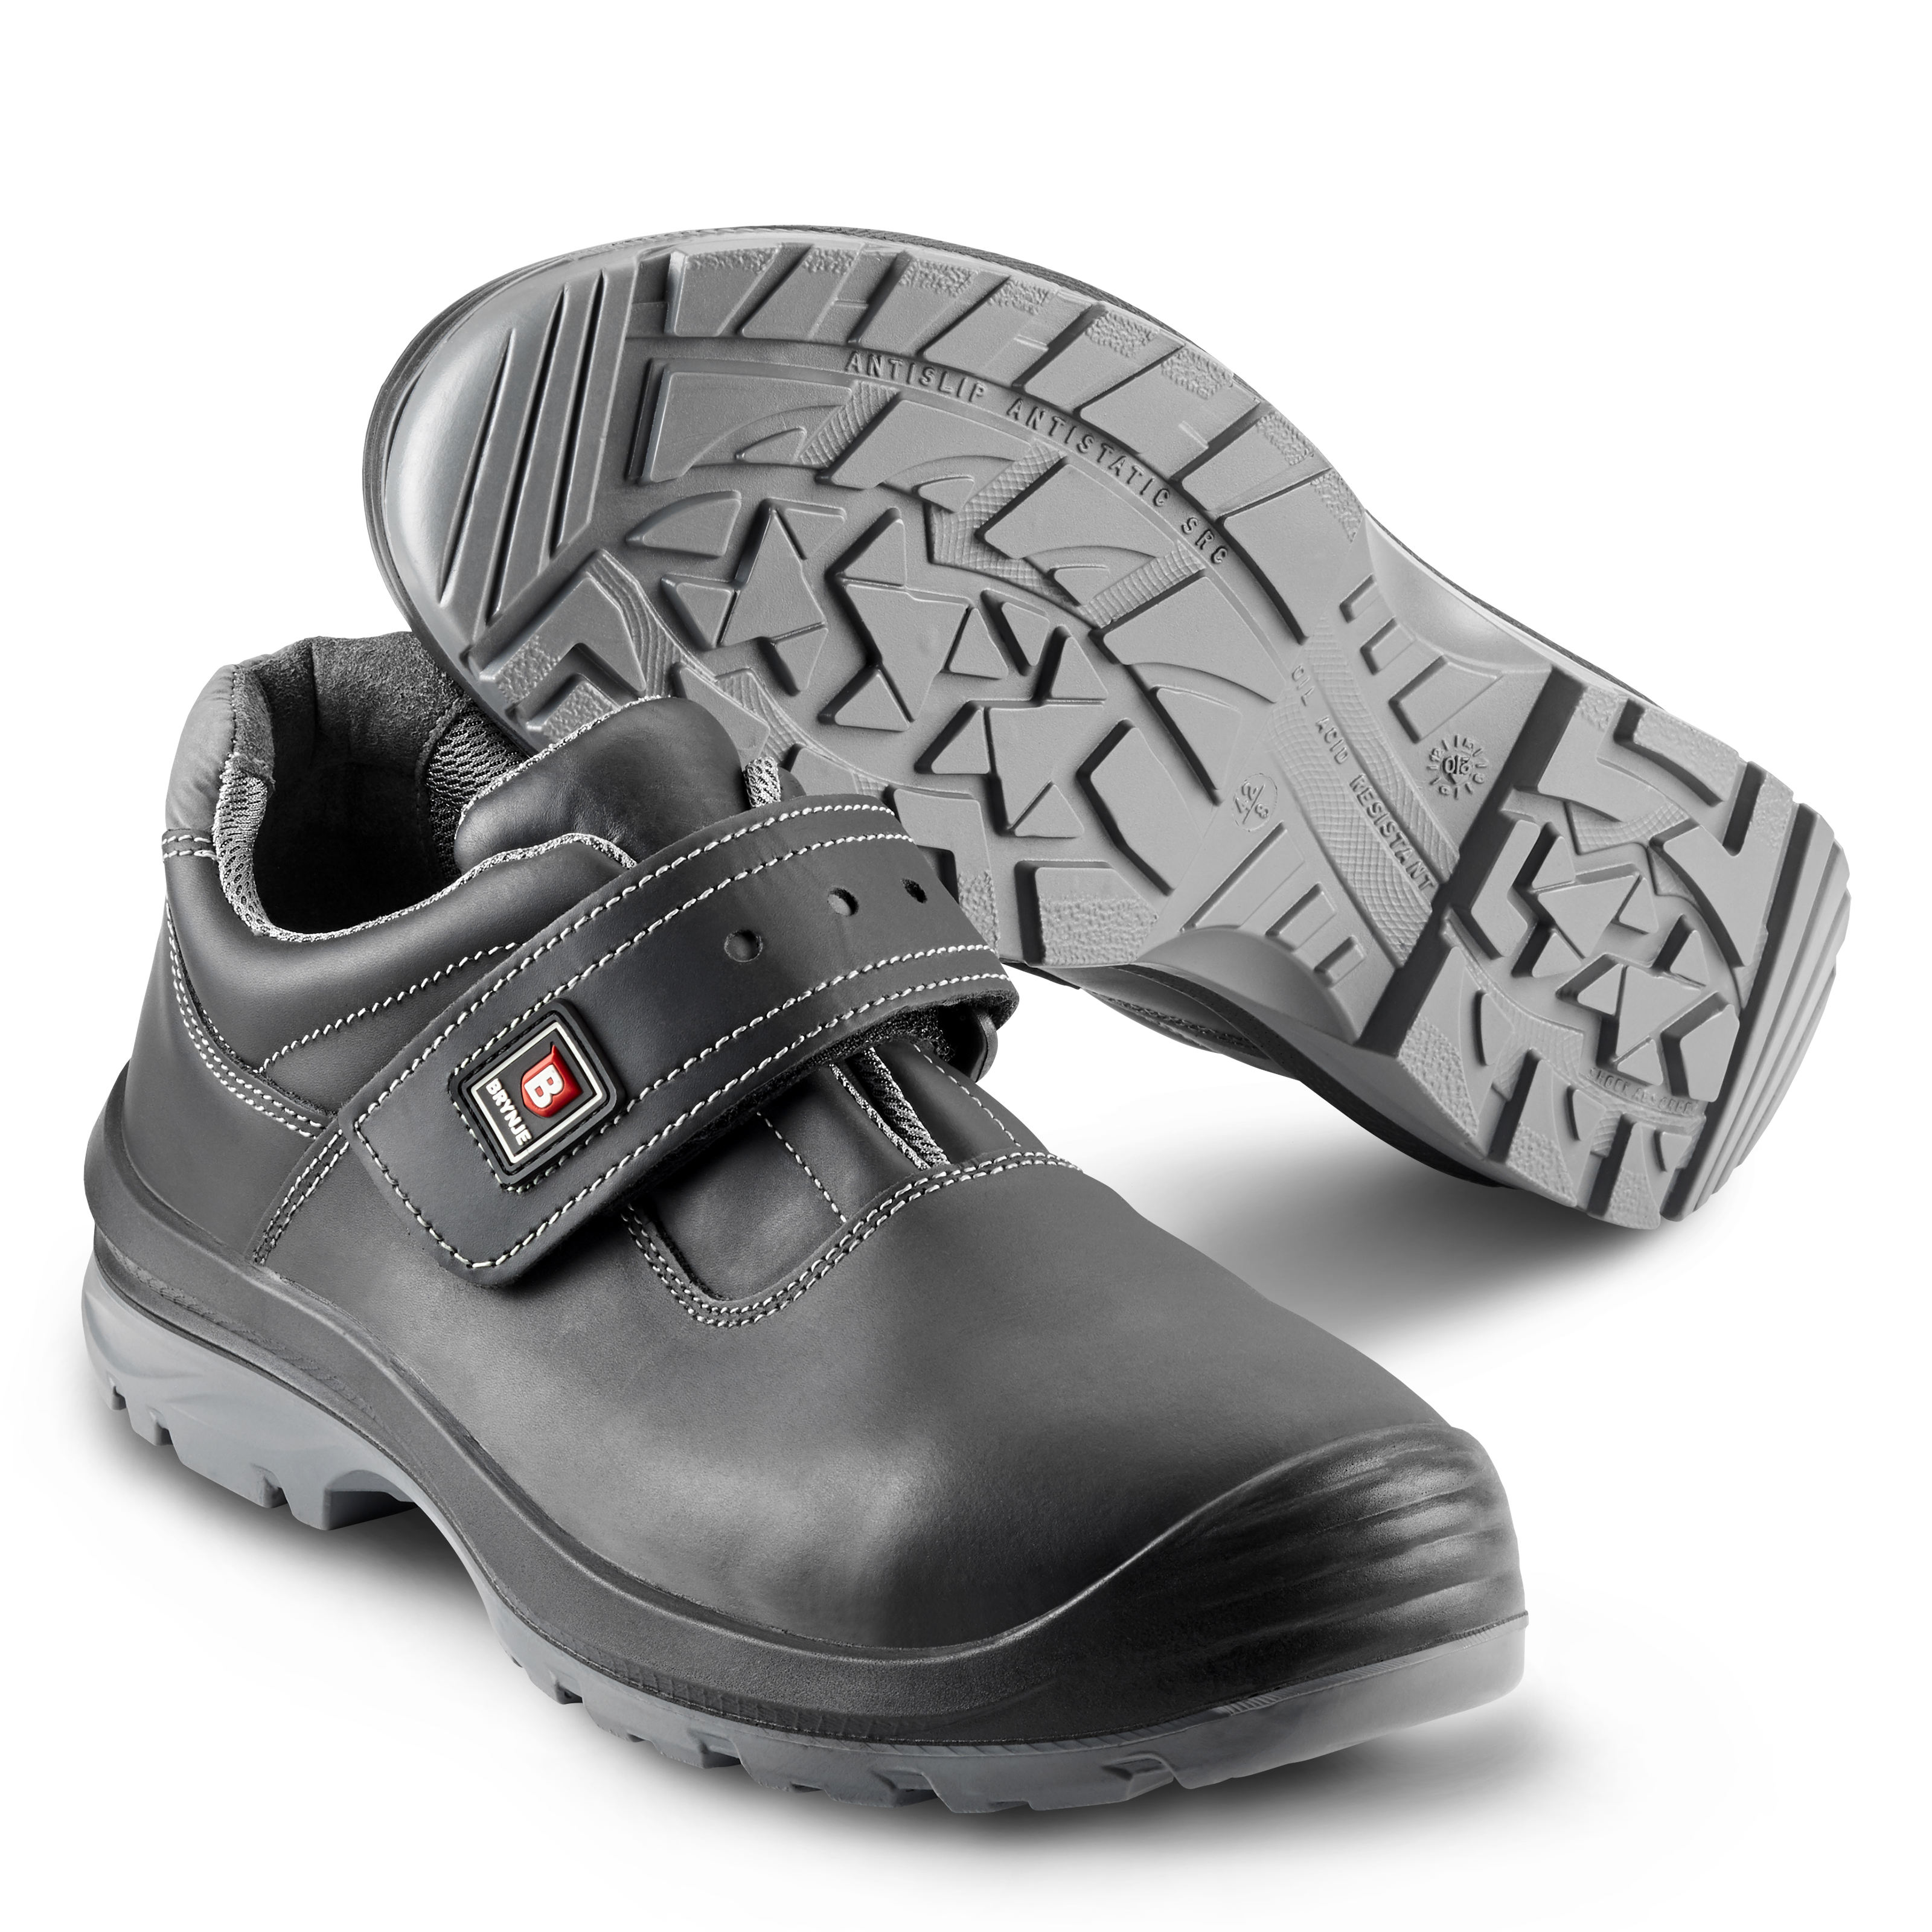 converse oil resistant shoes